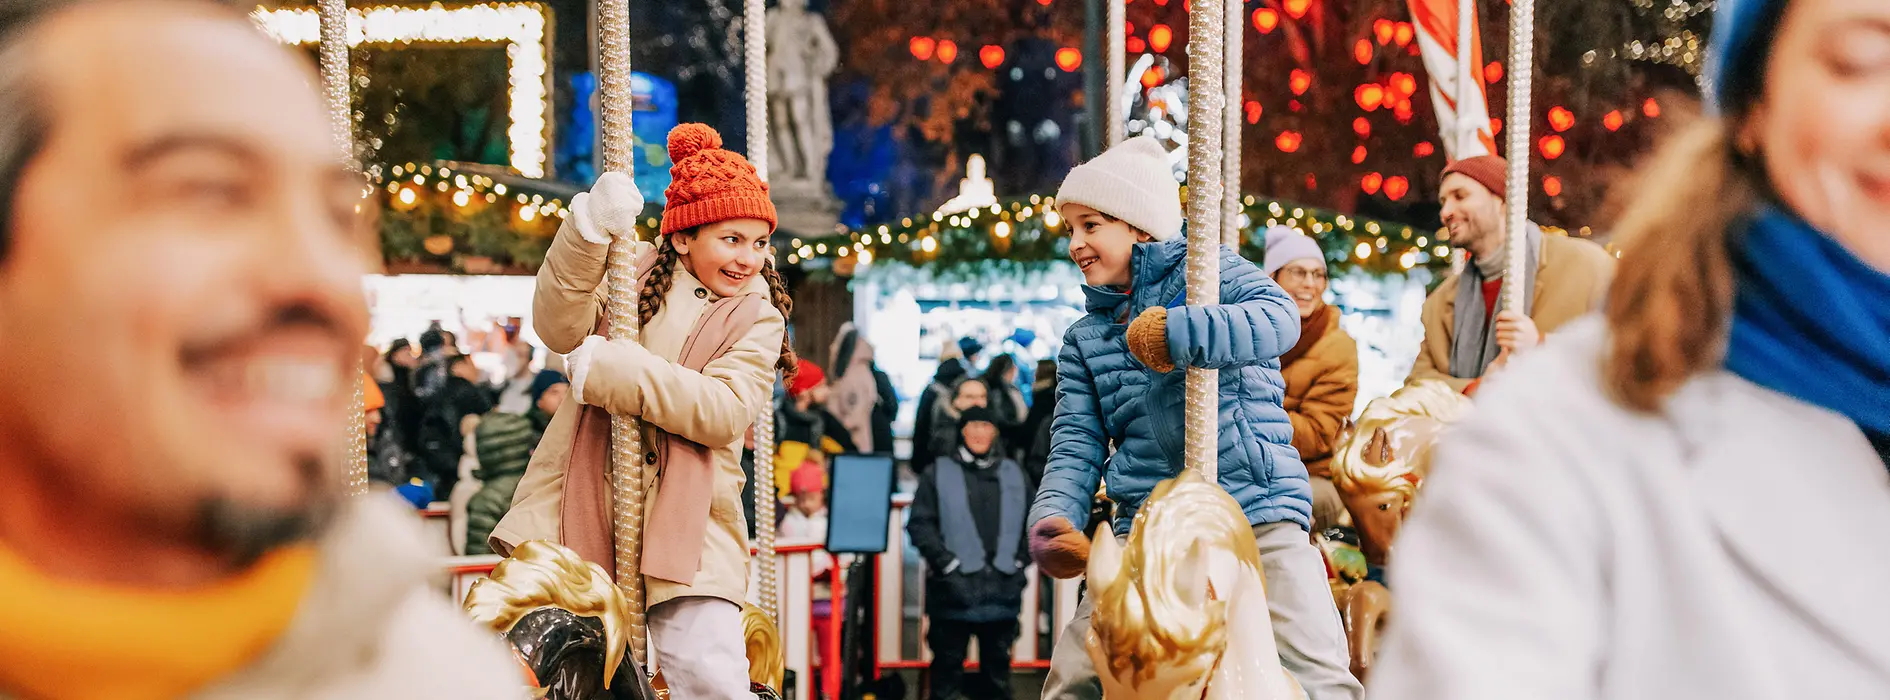 Christkindlmarkt am Rathausplatz, Ringelspiel, Kinder